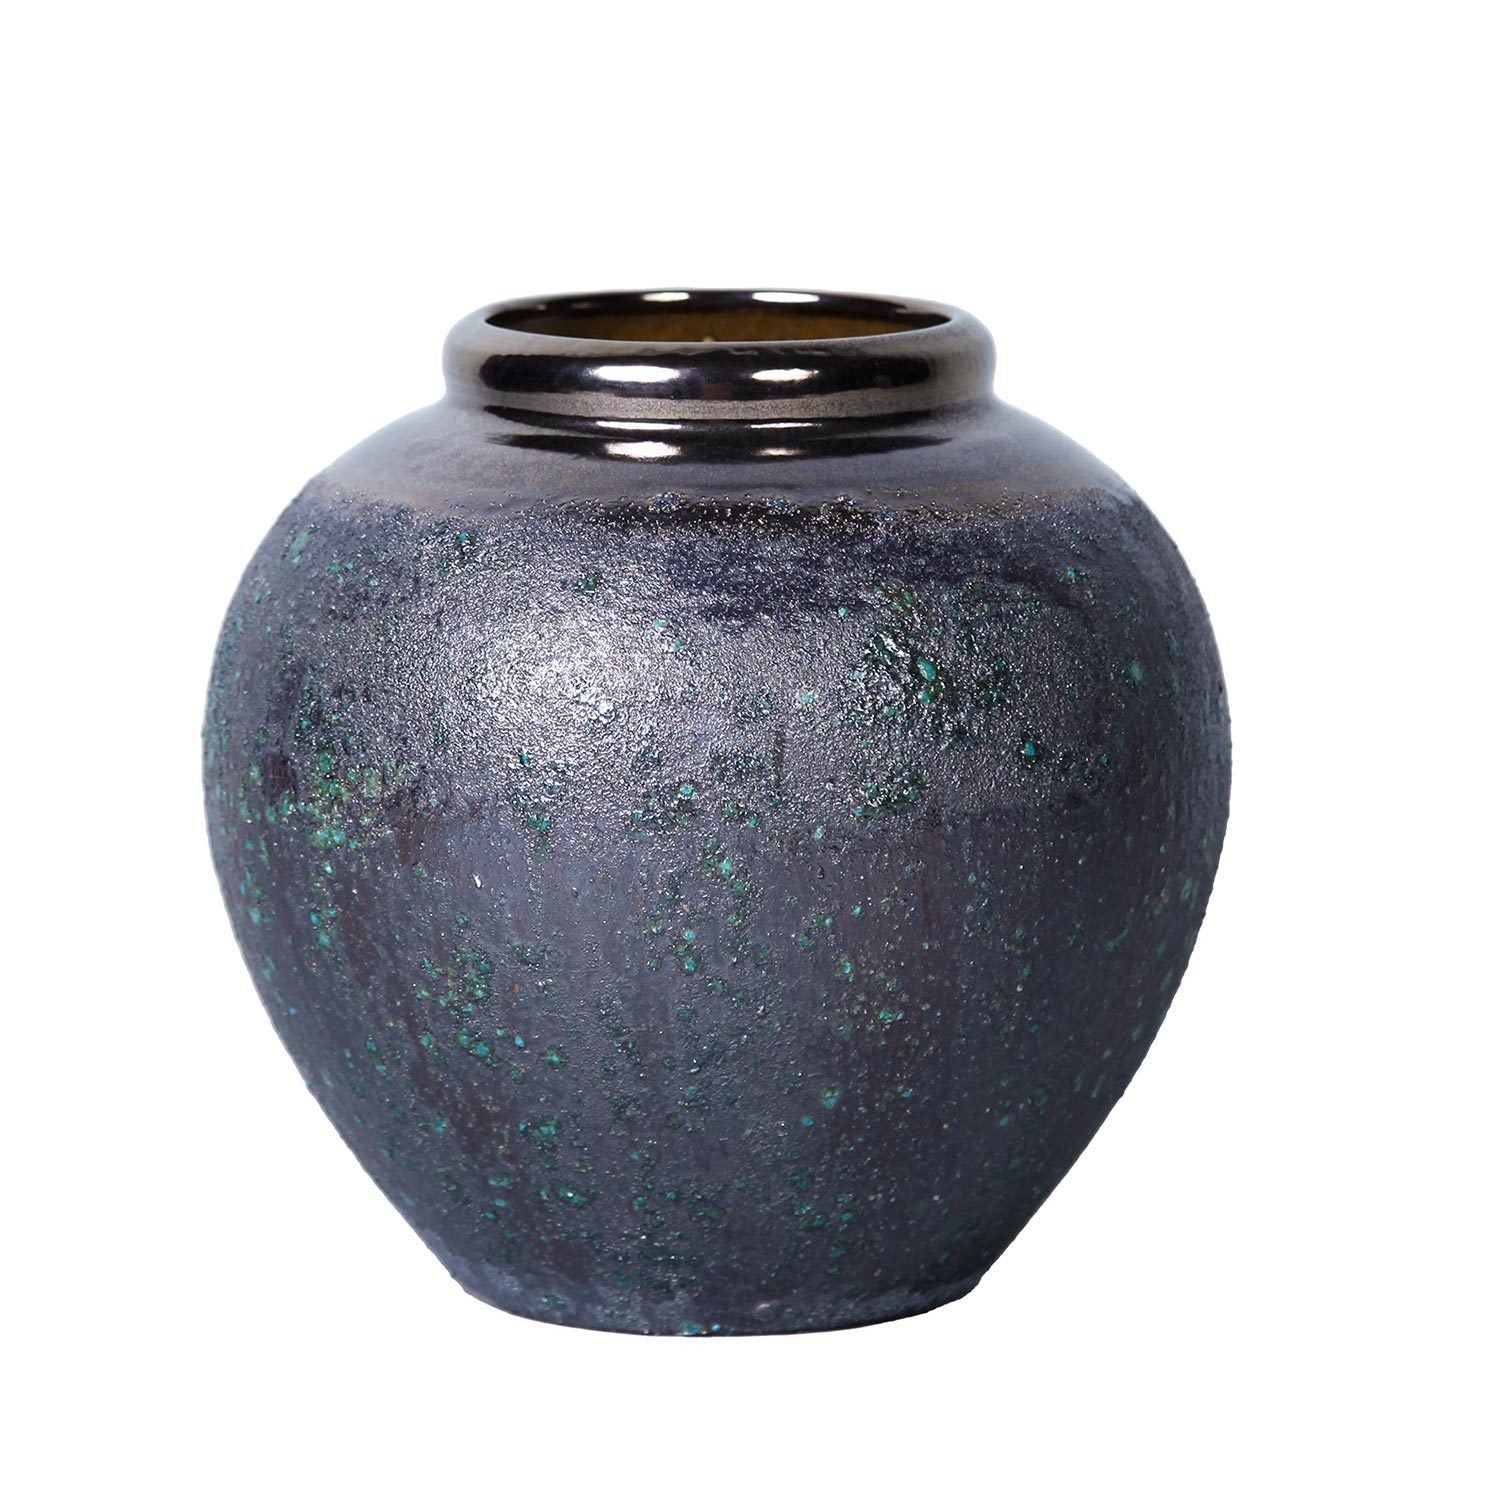 Artisanal Vintage Smoke Ceramic Vase 8.7"D x 8.7"H